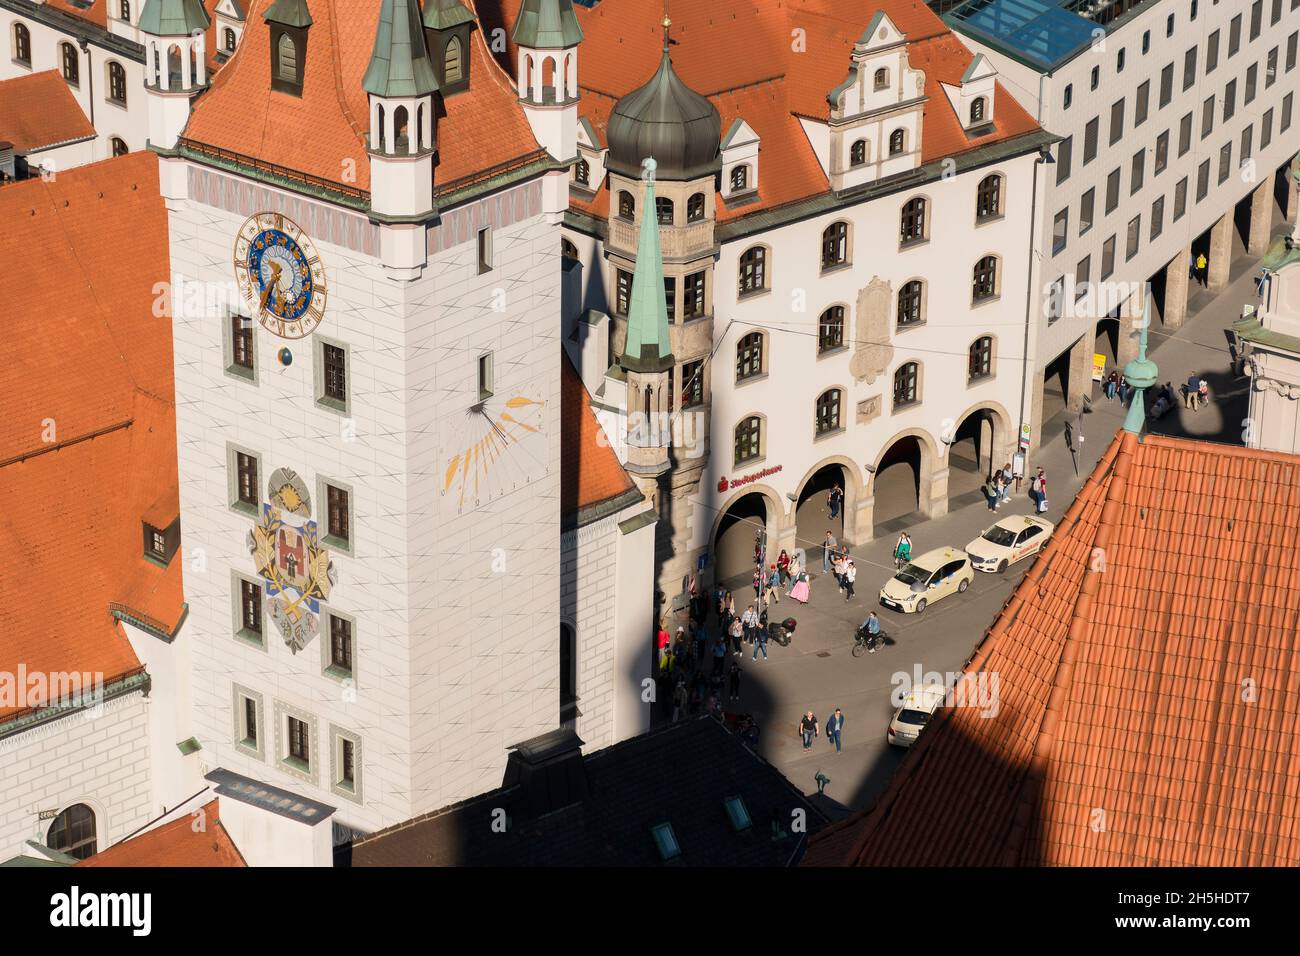 22 maggio 2019 Monaco di Baviera, Germania - Vecchio municipio (Altes Rathaus / Spielzeugmuseum) e Corte vecchia (Alter Hof) ex residenza imperiale di Luigi IV. Antenna Foto Stock